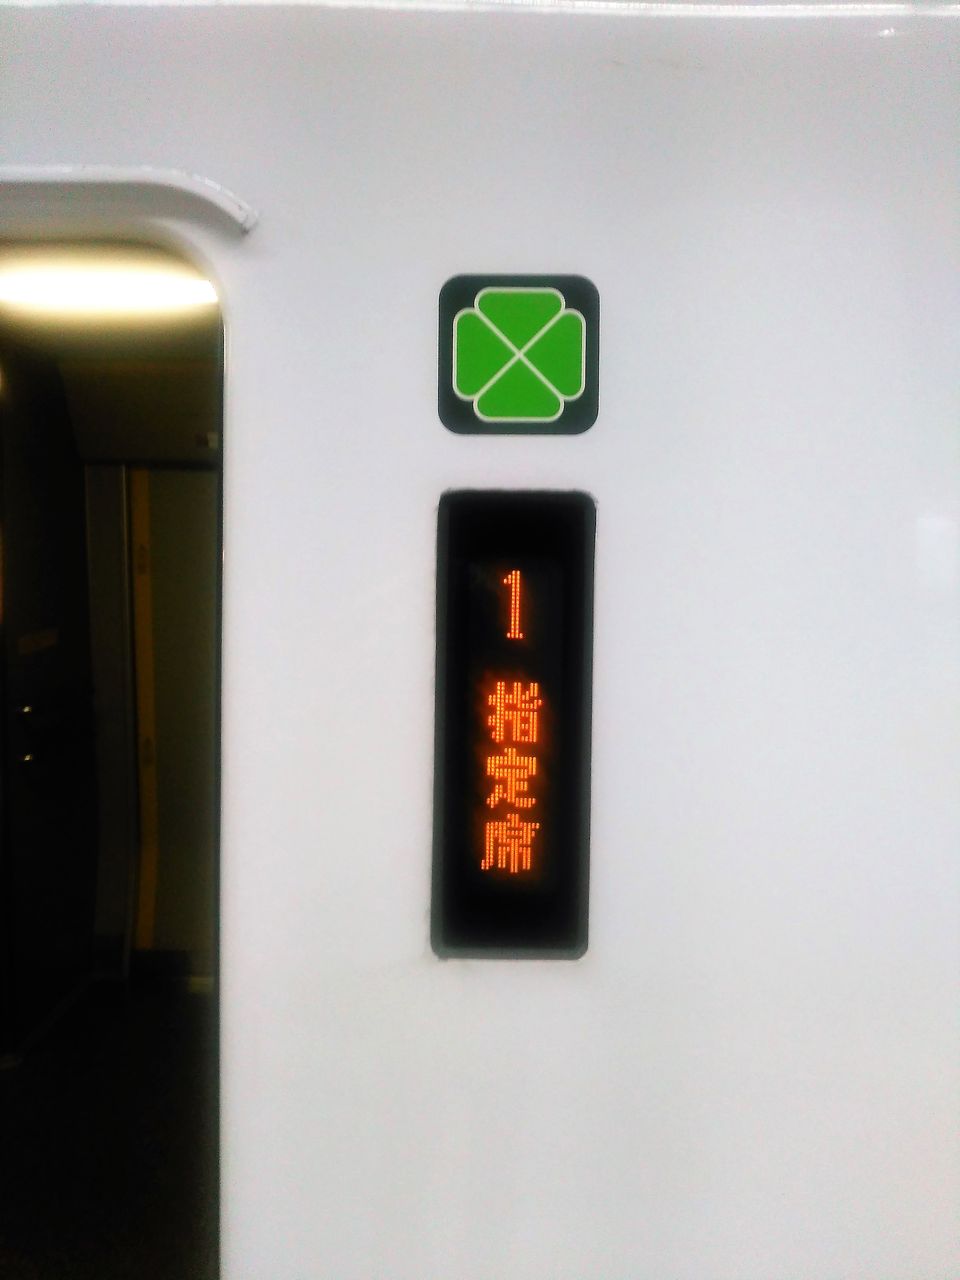 はるか9号 グリーン車に乗車してきました その2 新大阪から関西空港まで 通勤ライナーを抜本的拡充して 圧倒的多くの乗客に快適通勤を